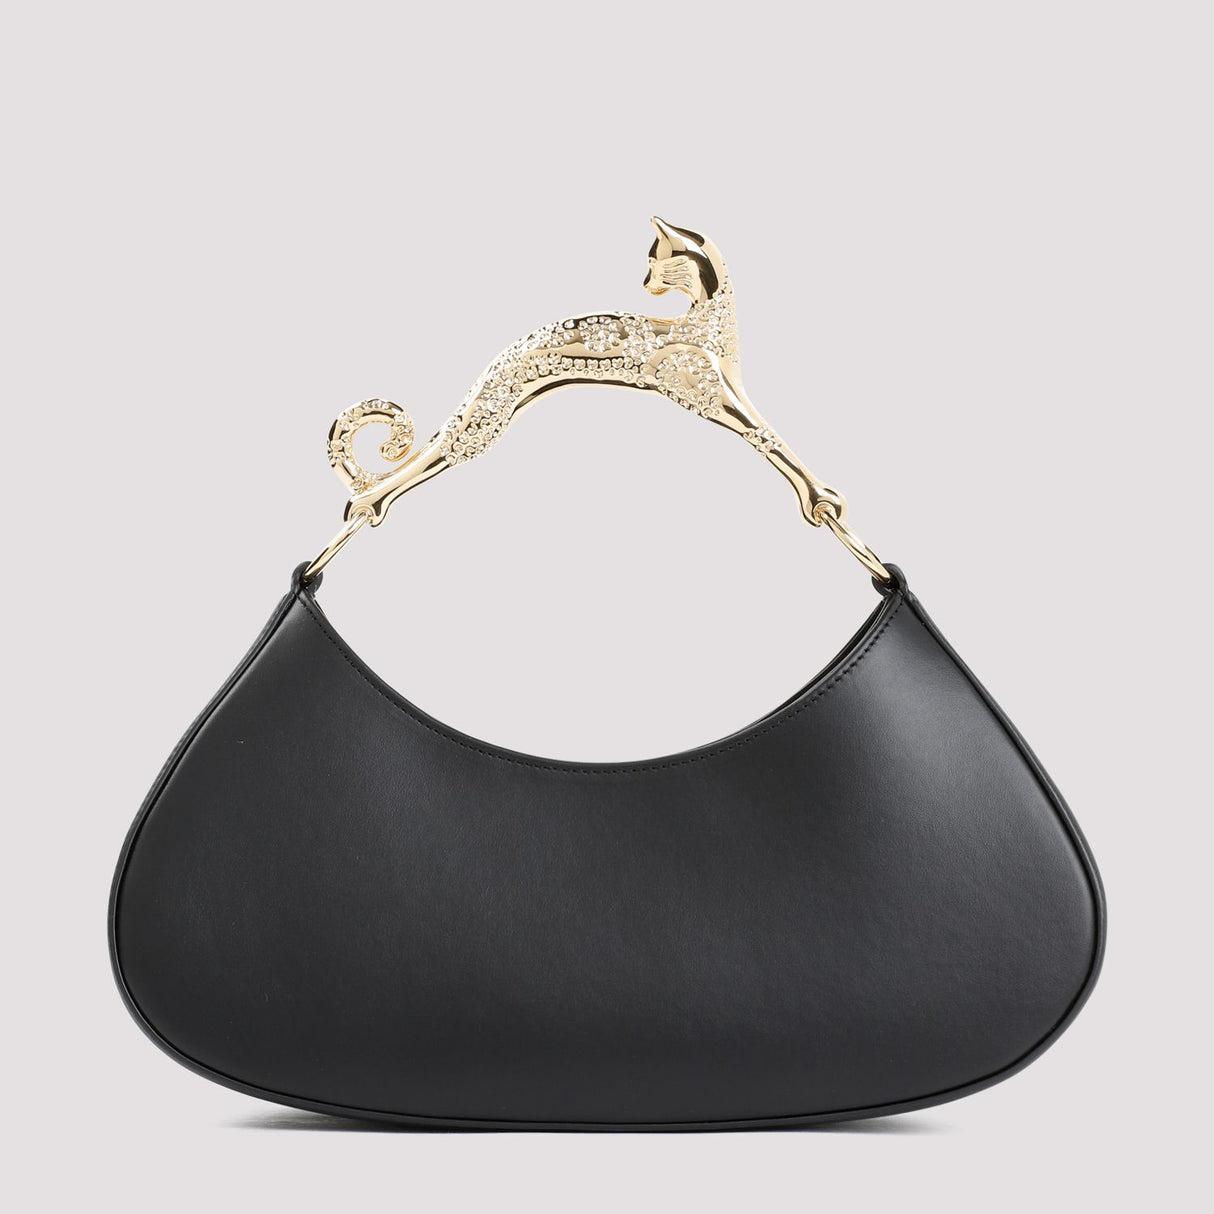 LANVIN Chic Black Leather Hobo Handbag with Cat Handle, W:28CM H:12CM D:10CM